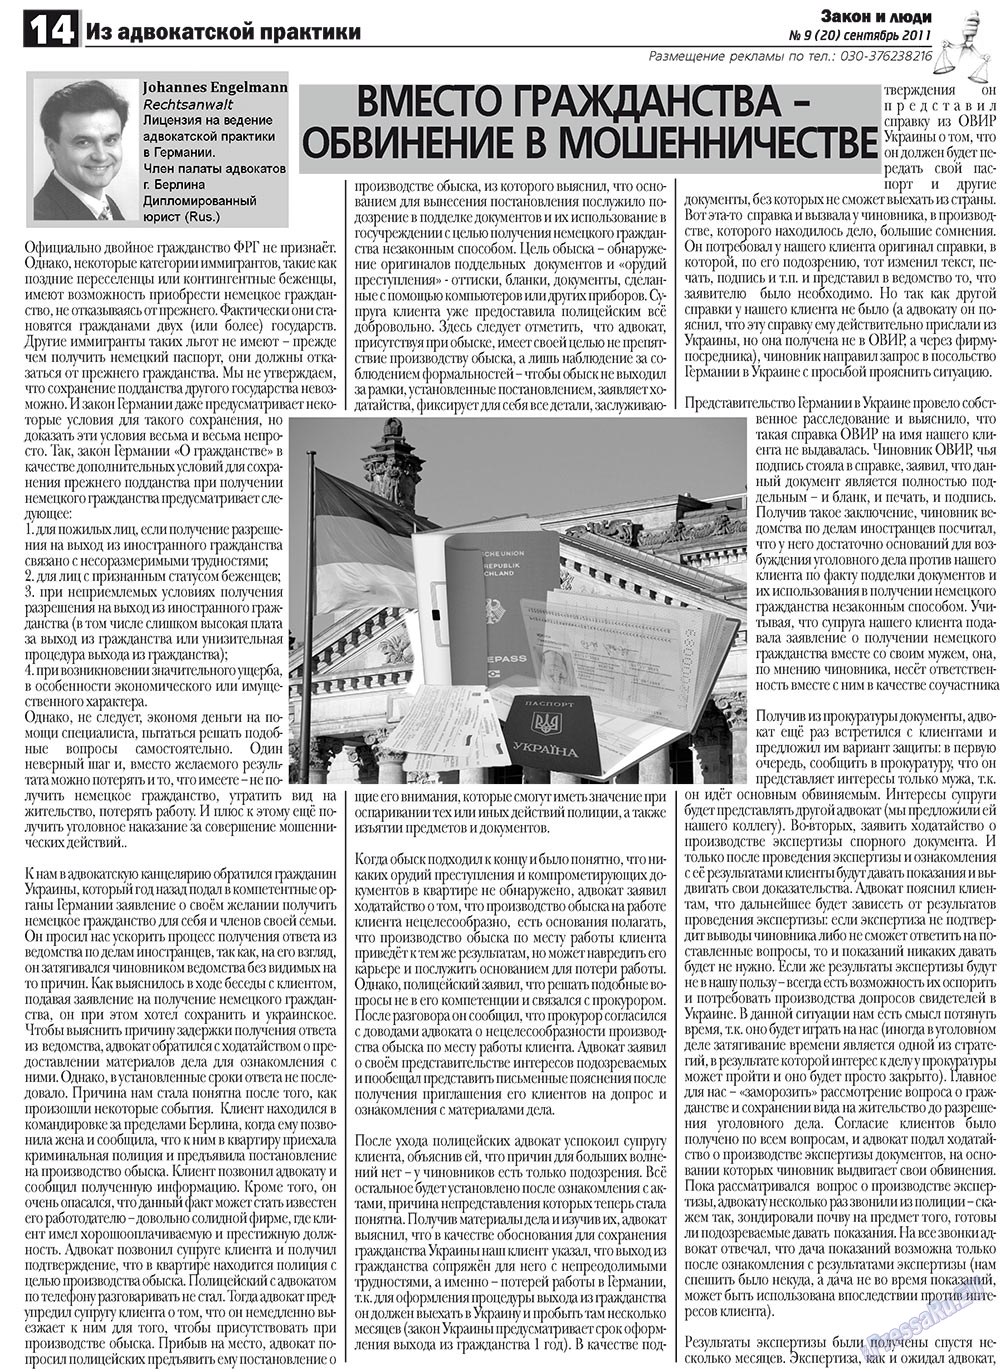 Закон и люди (газета). 2011 год, номер 9, стр. 14